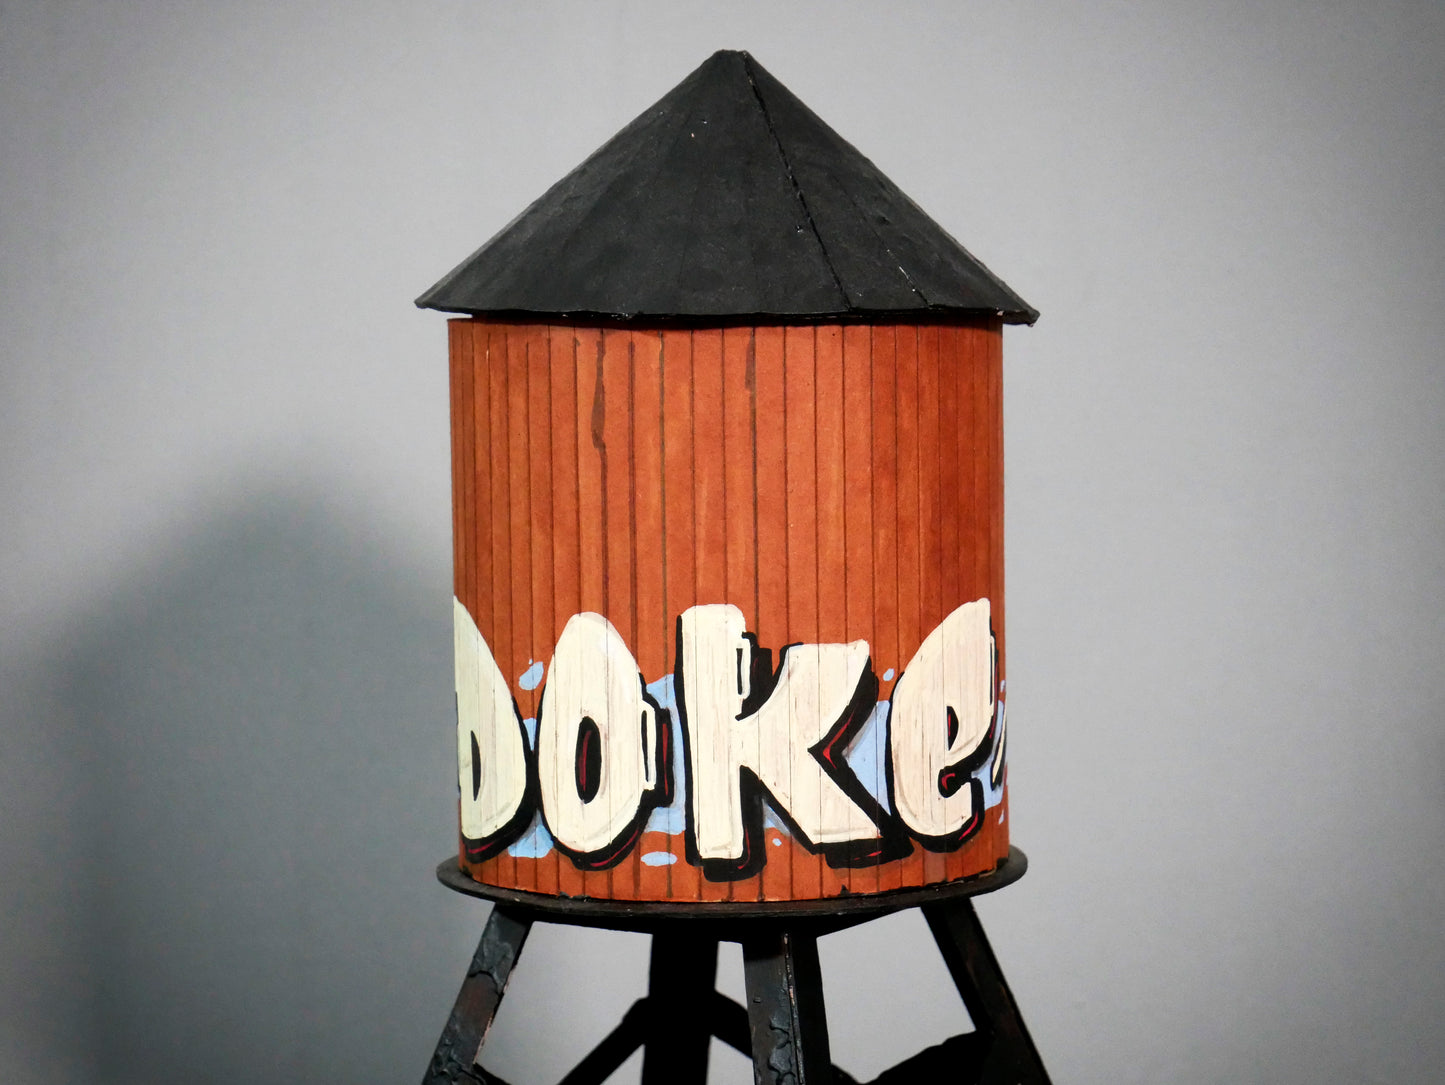 Original Doke Water tower